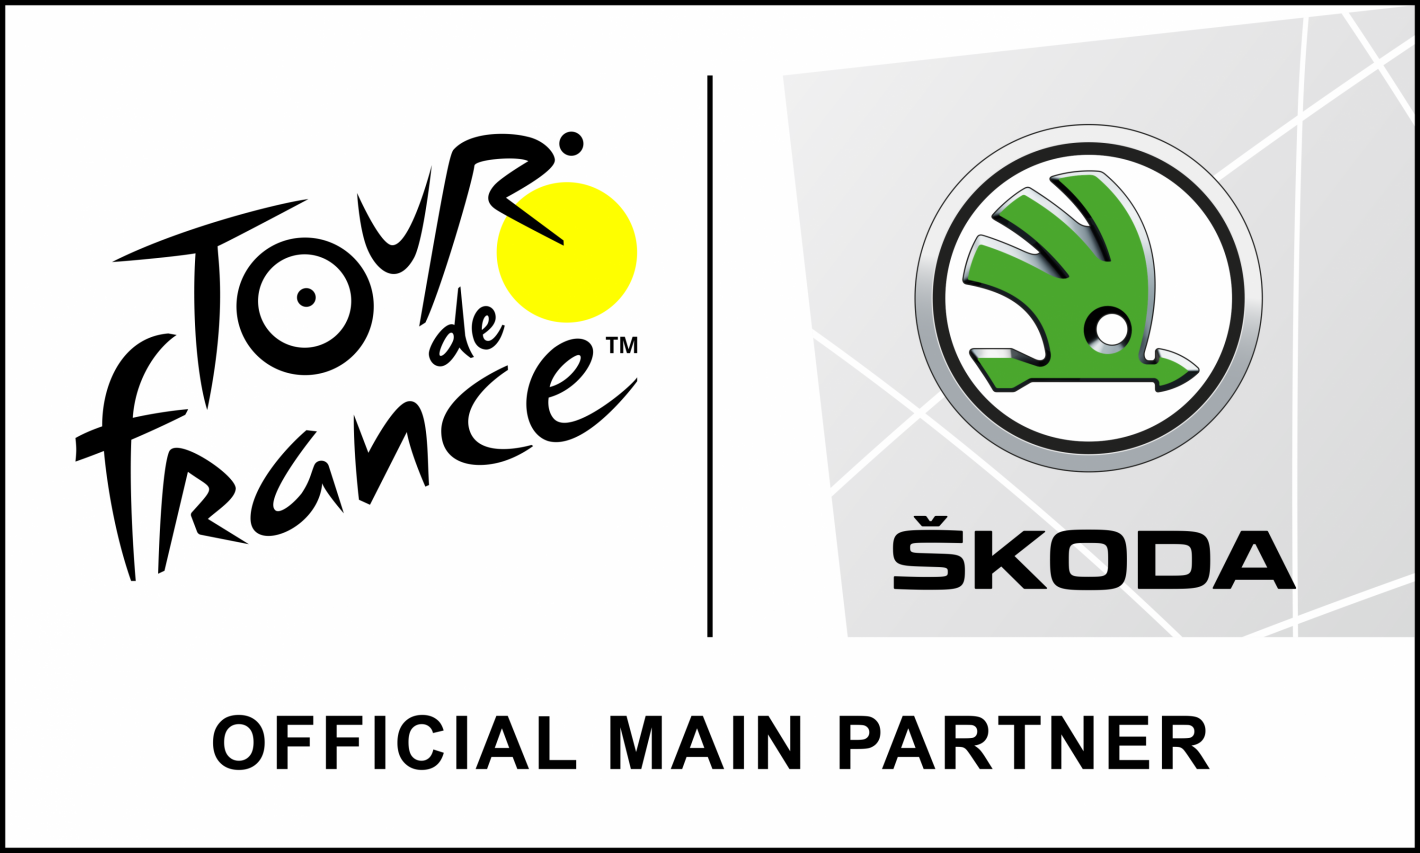 Skoda partenaire officiel du Tour de France 